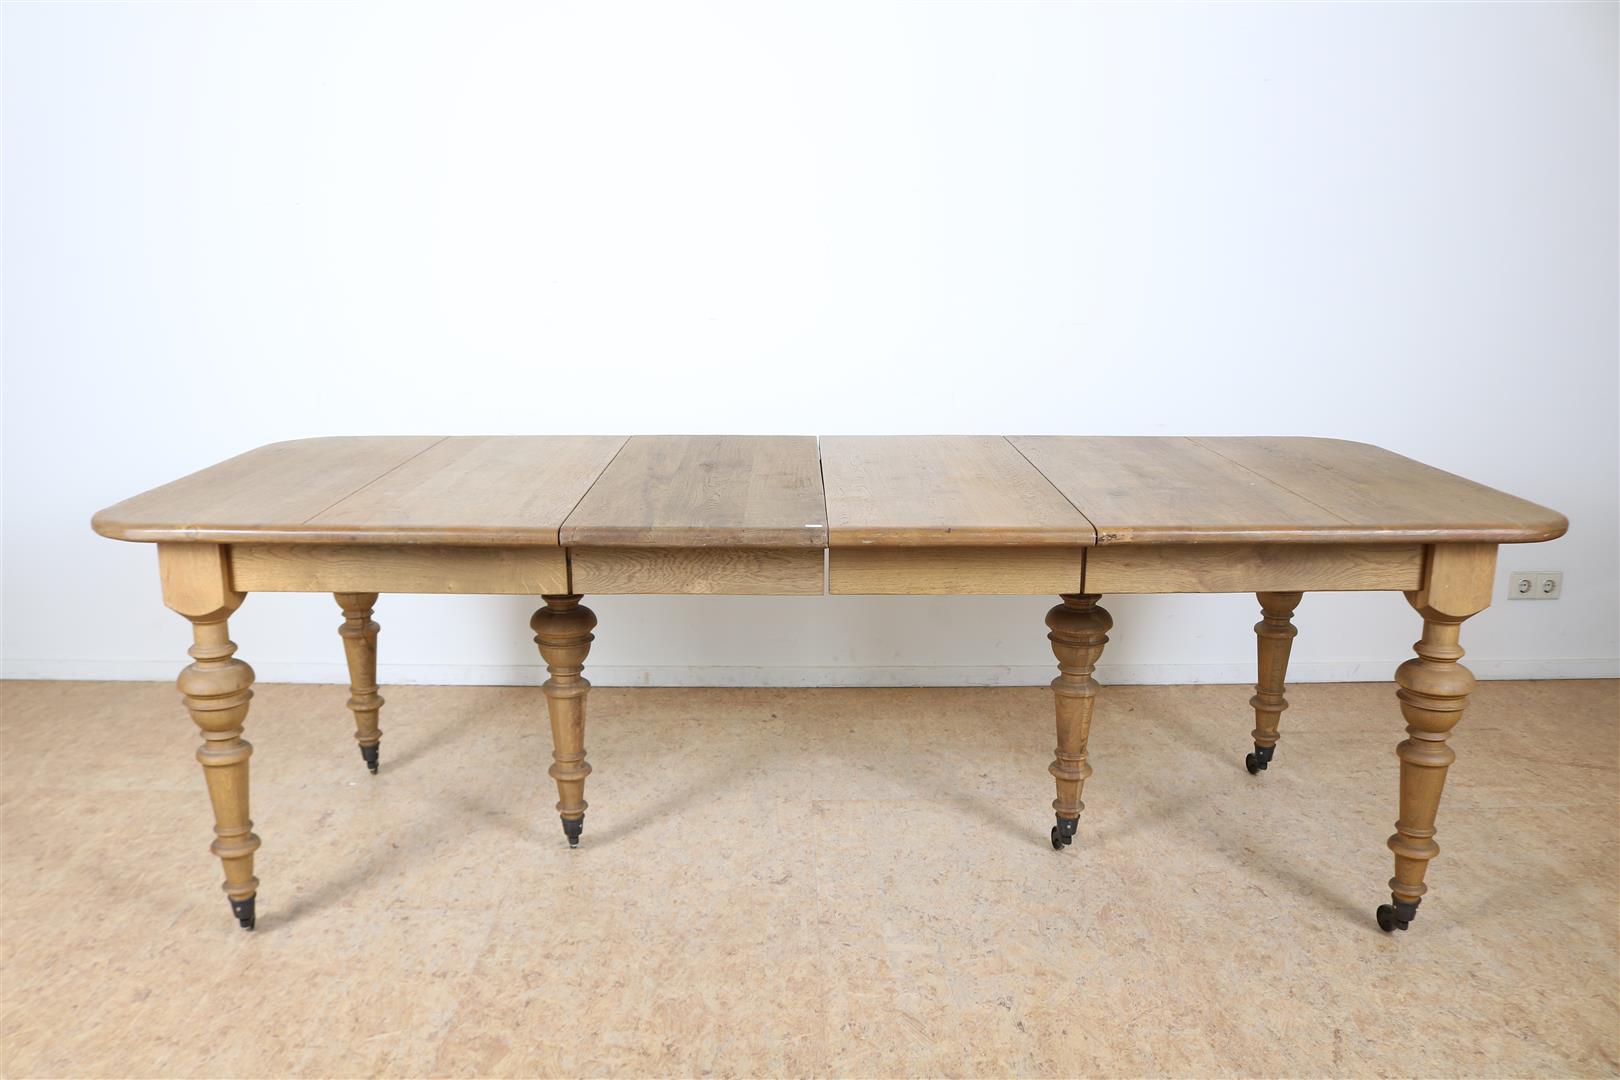 Oak wings table on turned legs ending in brass wheels, 78 x 162 x 98 cm. 2 oak intermediate leaves